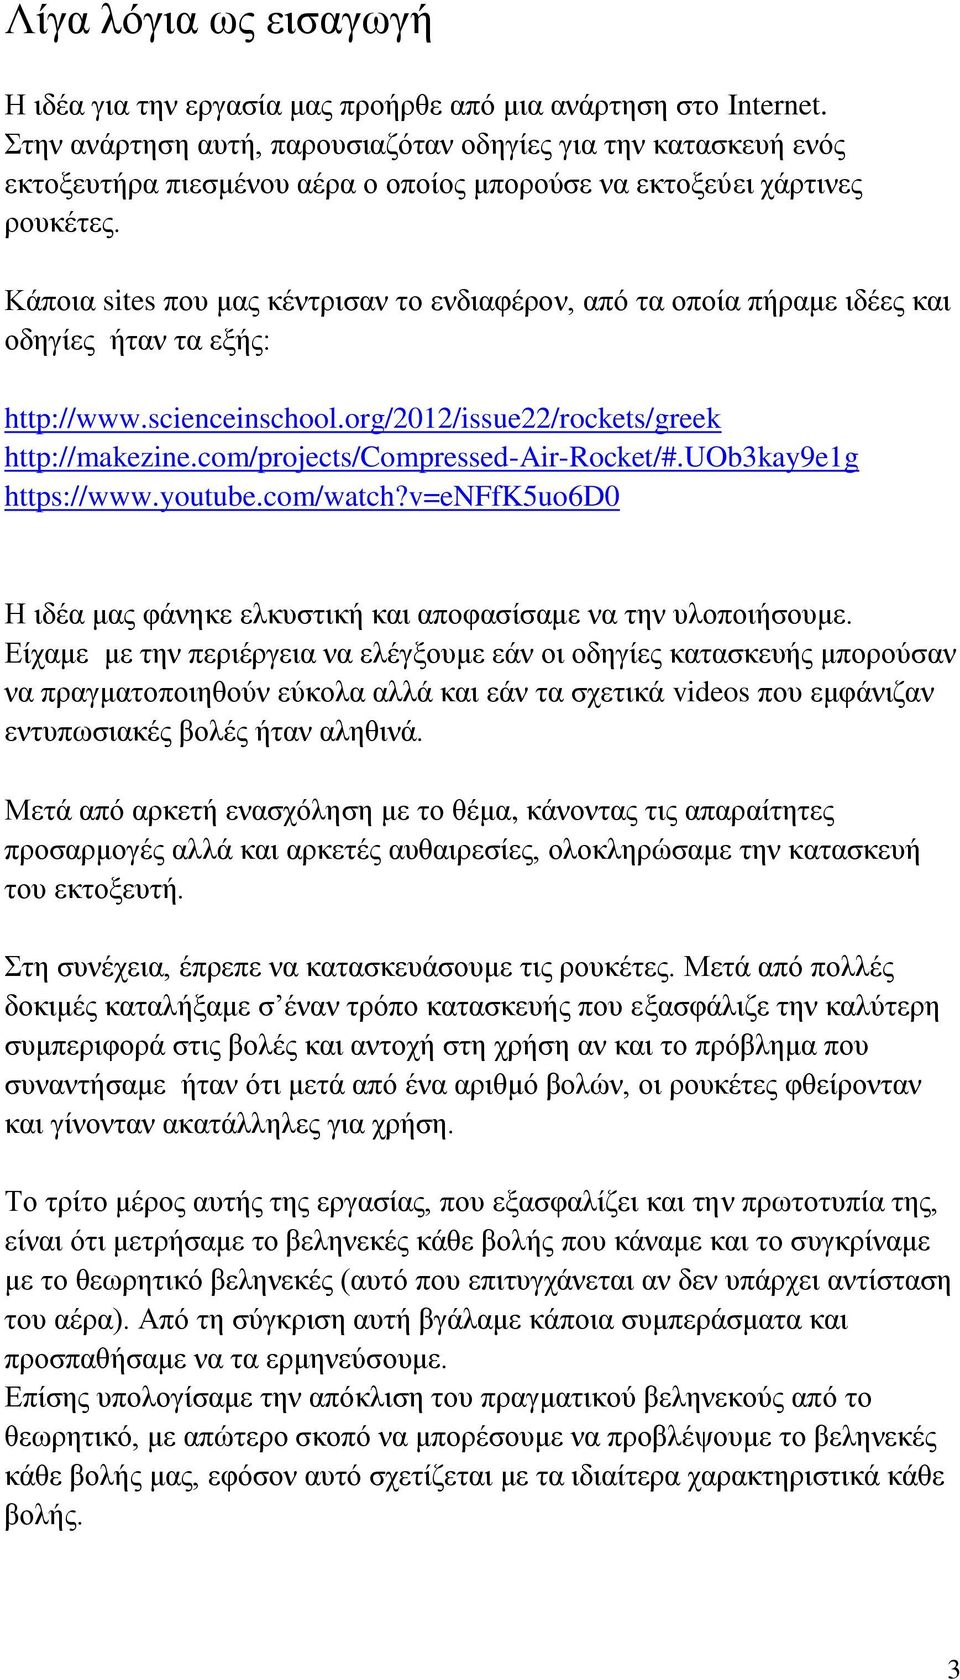 Κάποια sites που μας κέντρισαν το ενδιαφέρον, από τα οποία πήραμε ιδέες και οδηγίες ήταν τα εξής: http://www.scienceinschool.org/2012/issue22/rockets/greek http://makezine.